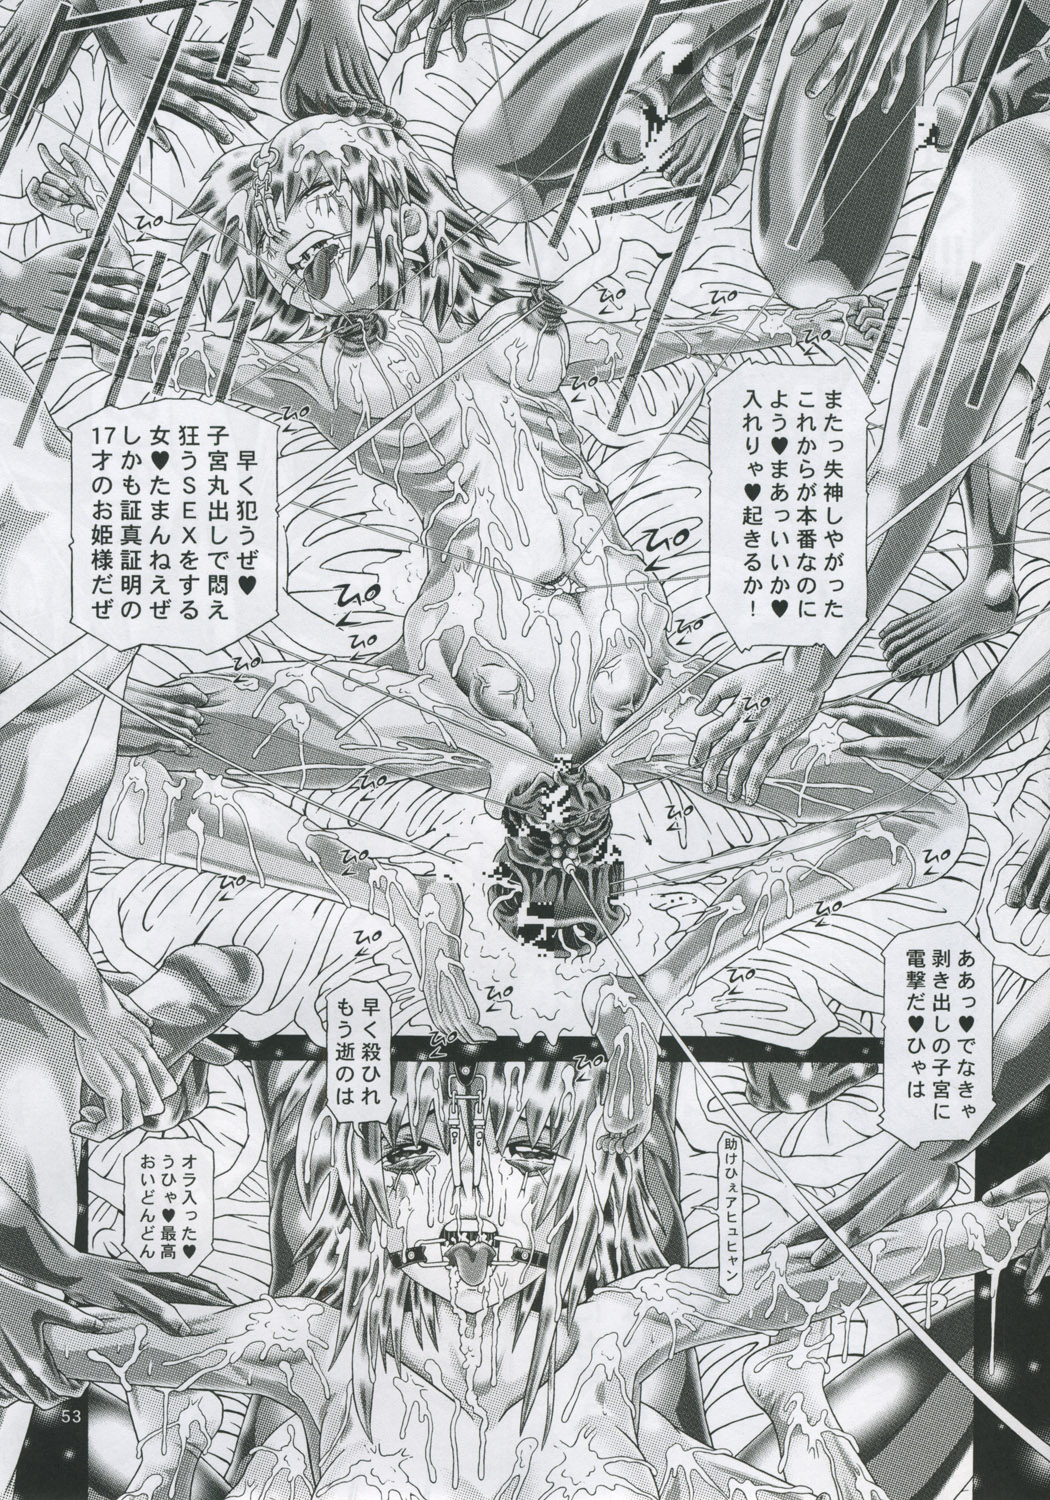 [柿ノ房 (柿ノ本歌麿)] RANDOM NUDE Vol.4 - Cagalli Yula Athha (機動戦士ガンダムSEED DESTINY)